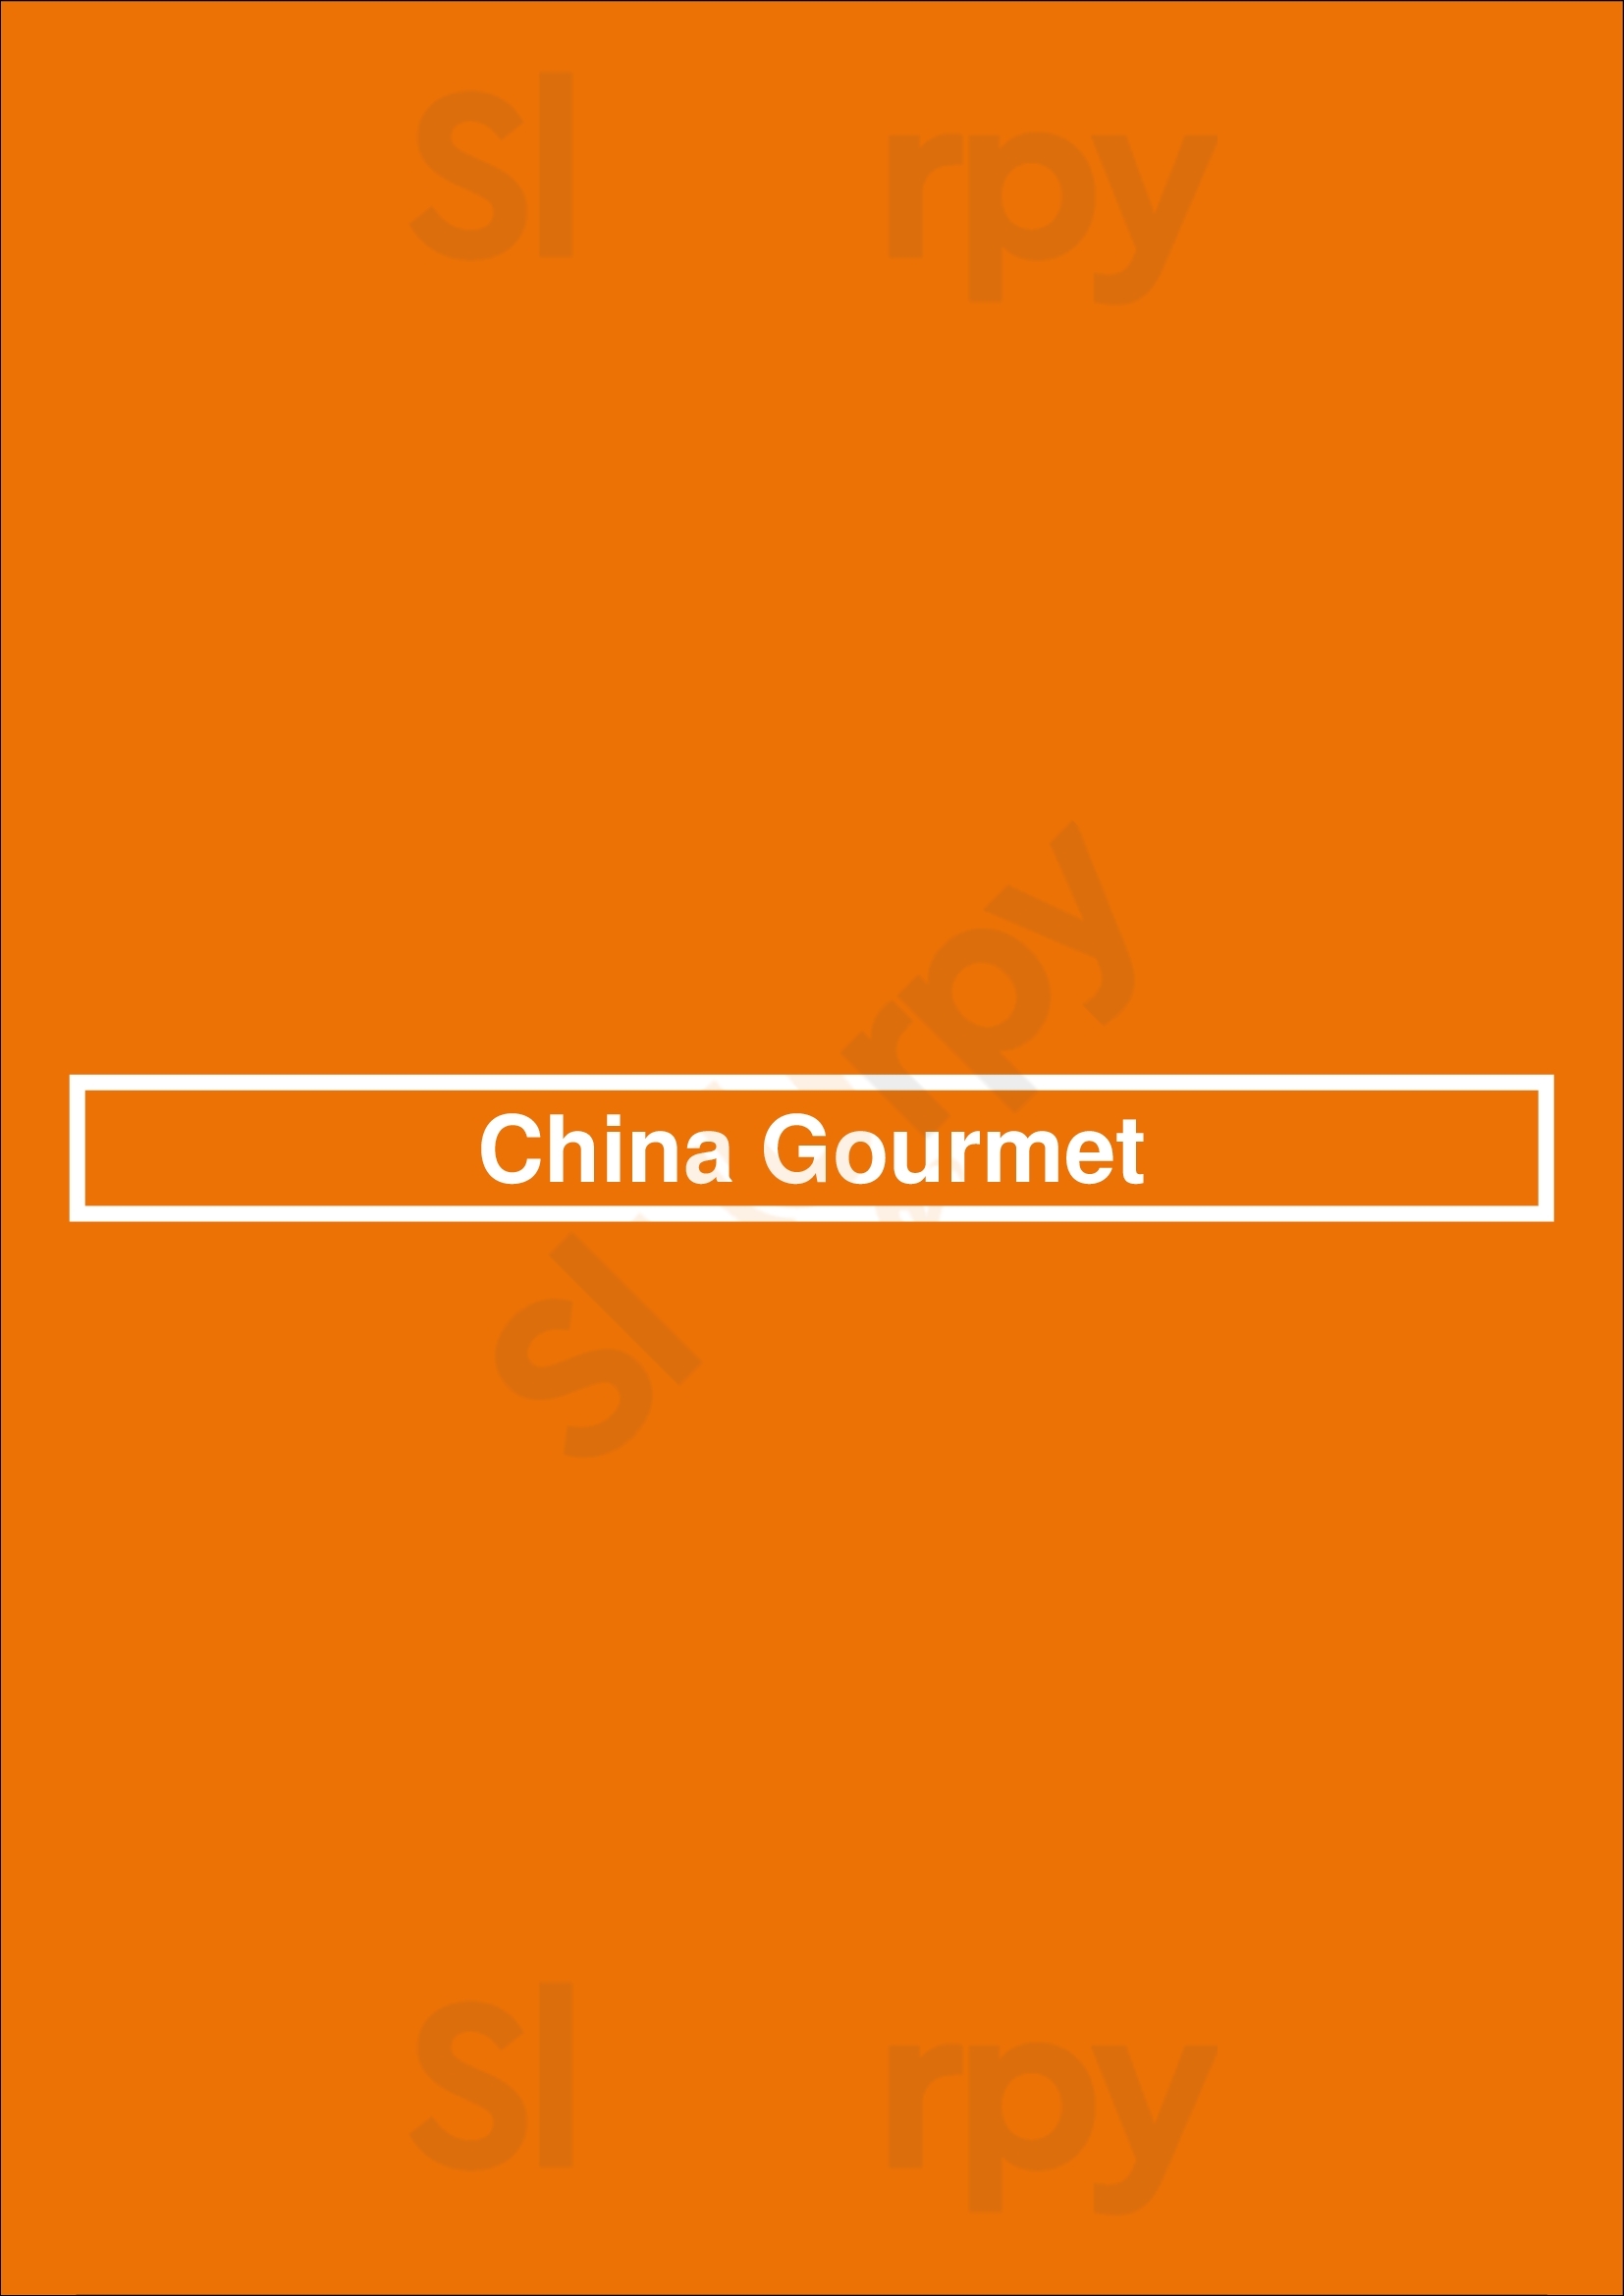 China Gourmet Cincinnati Menu - 1